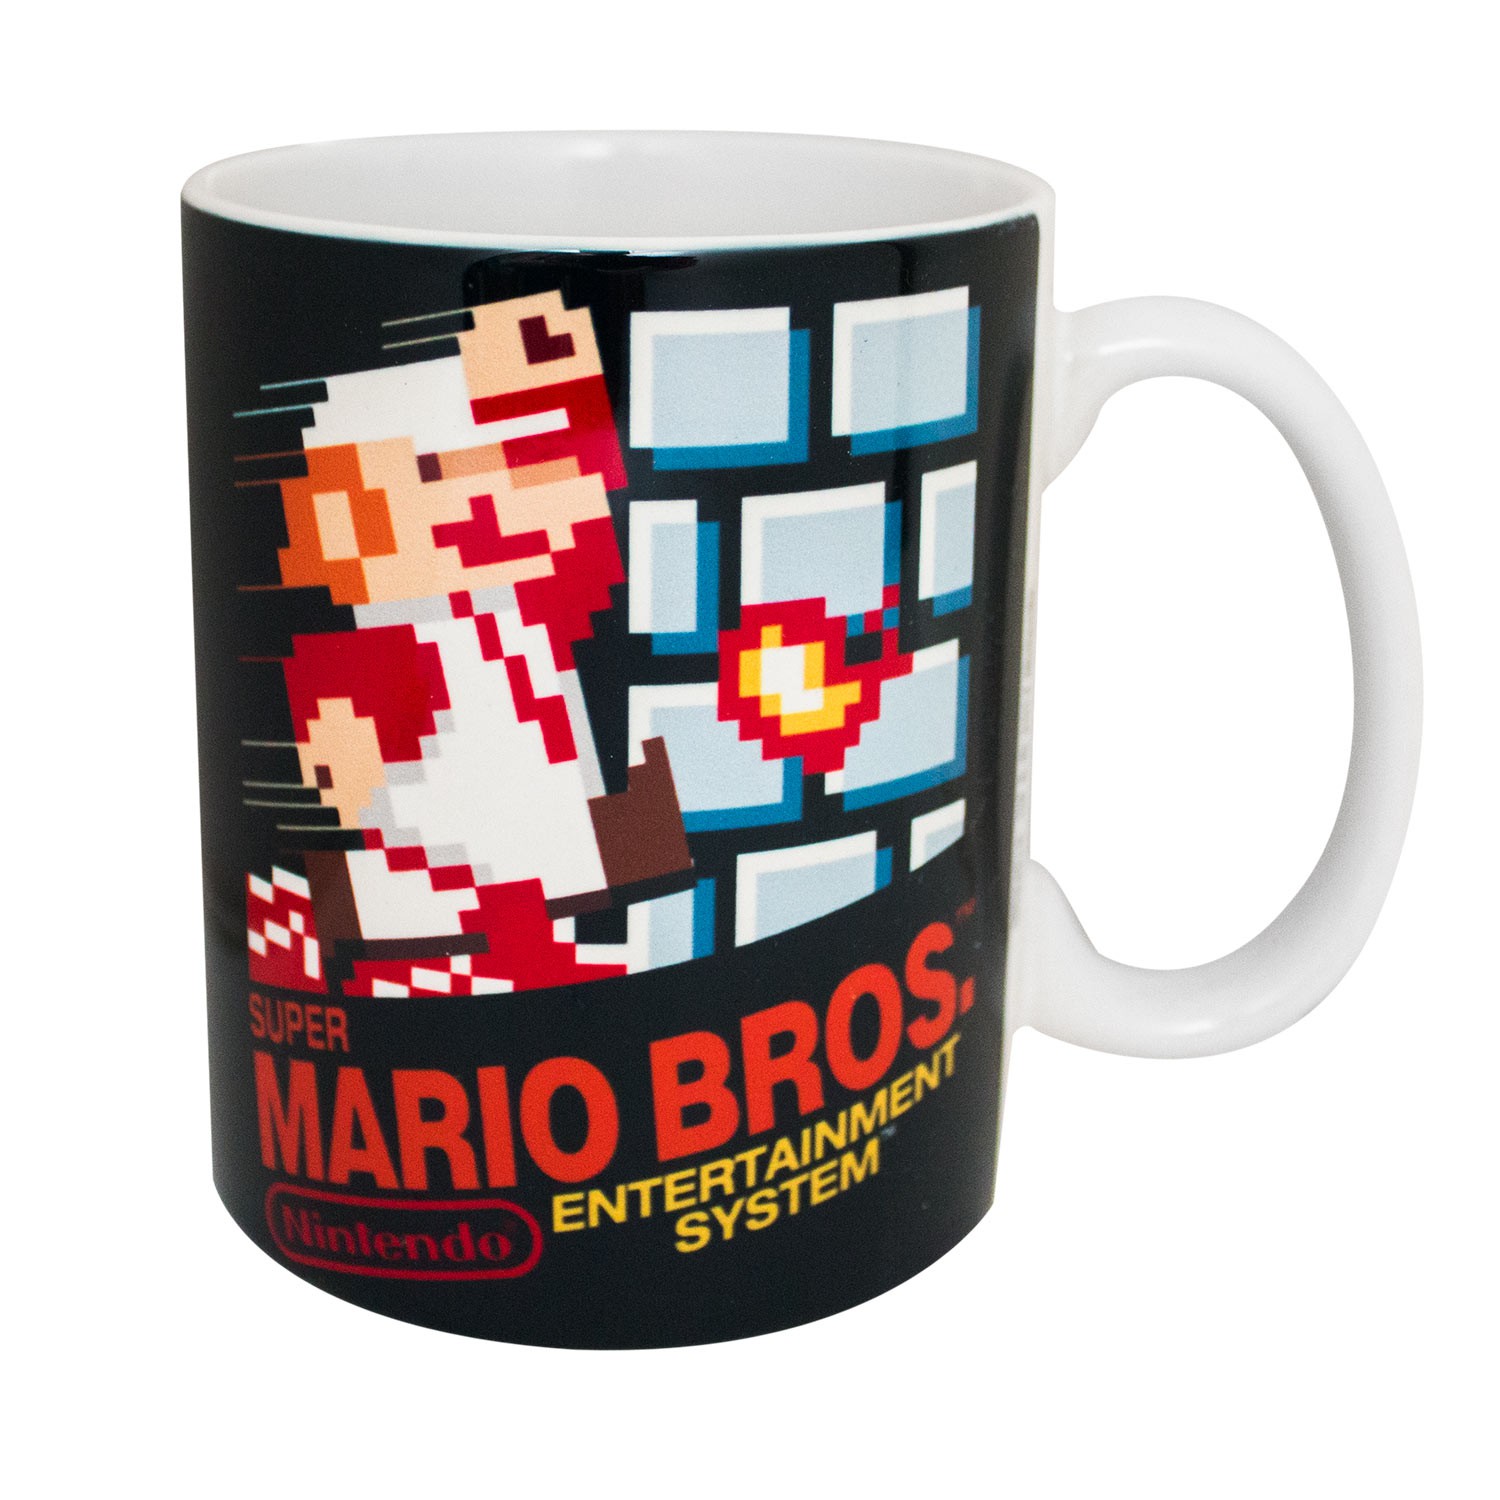 Super Mario Bros. NES Coffee Mug